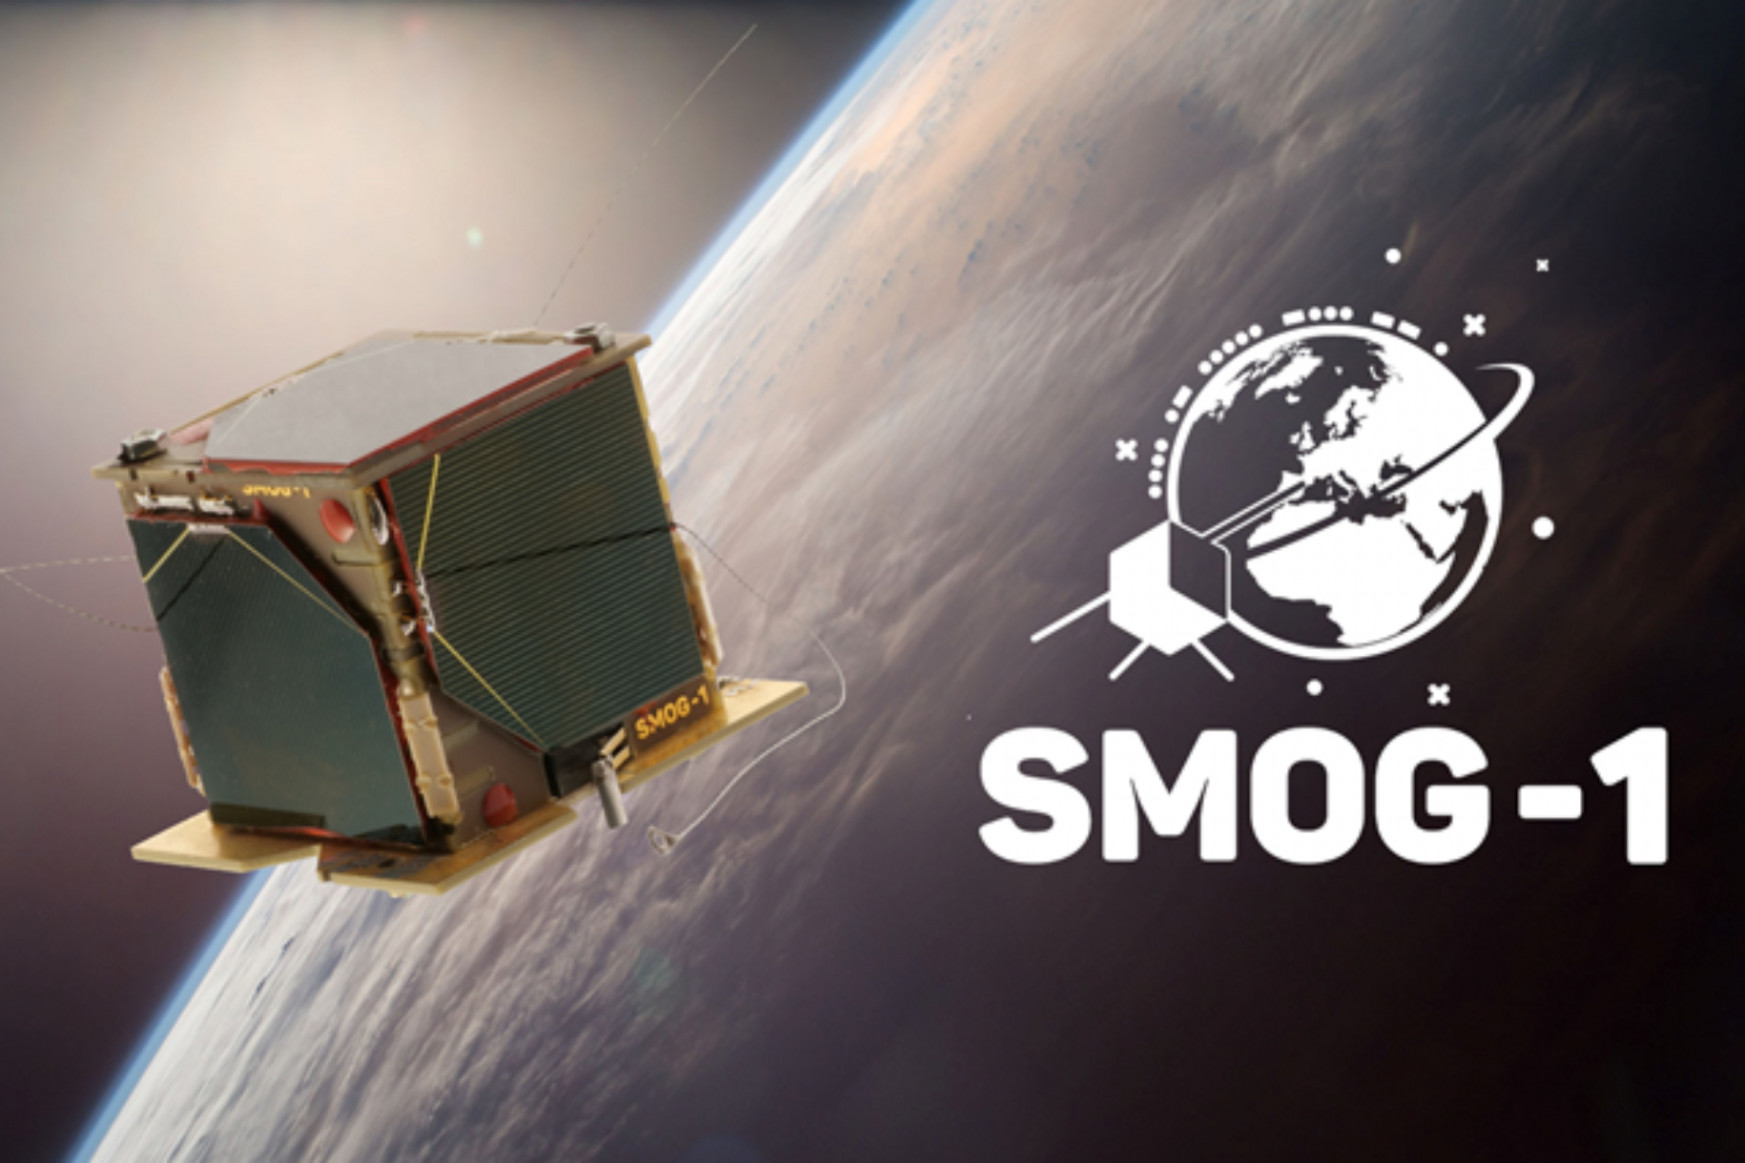 Magyar műhold az űrben: pályára állt és működik a SMOG-1